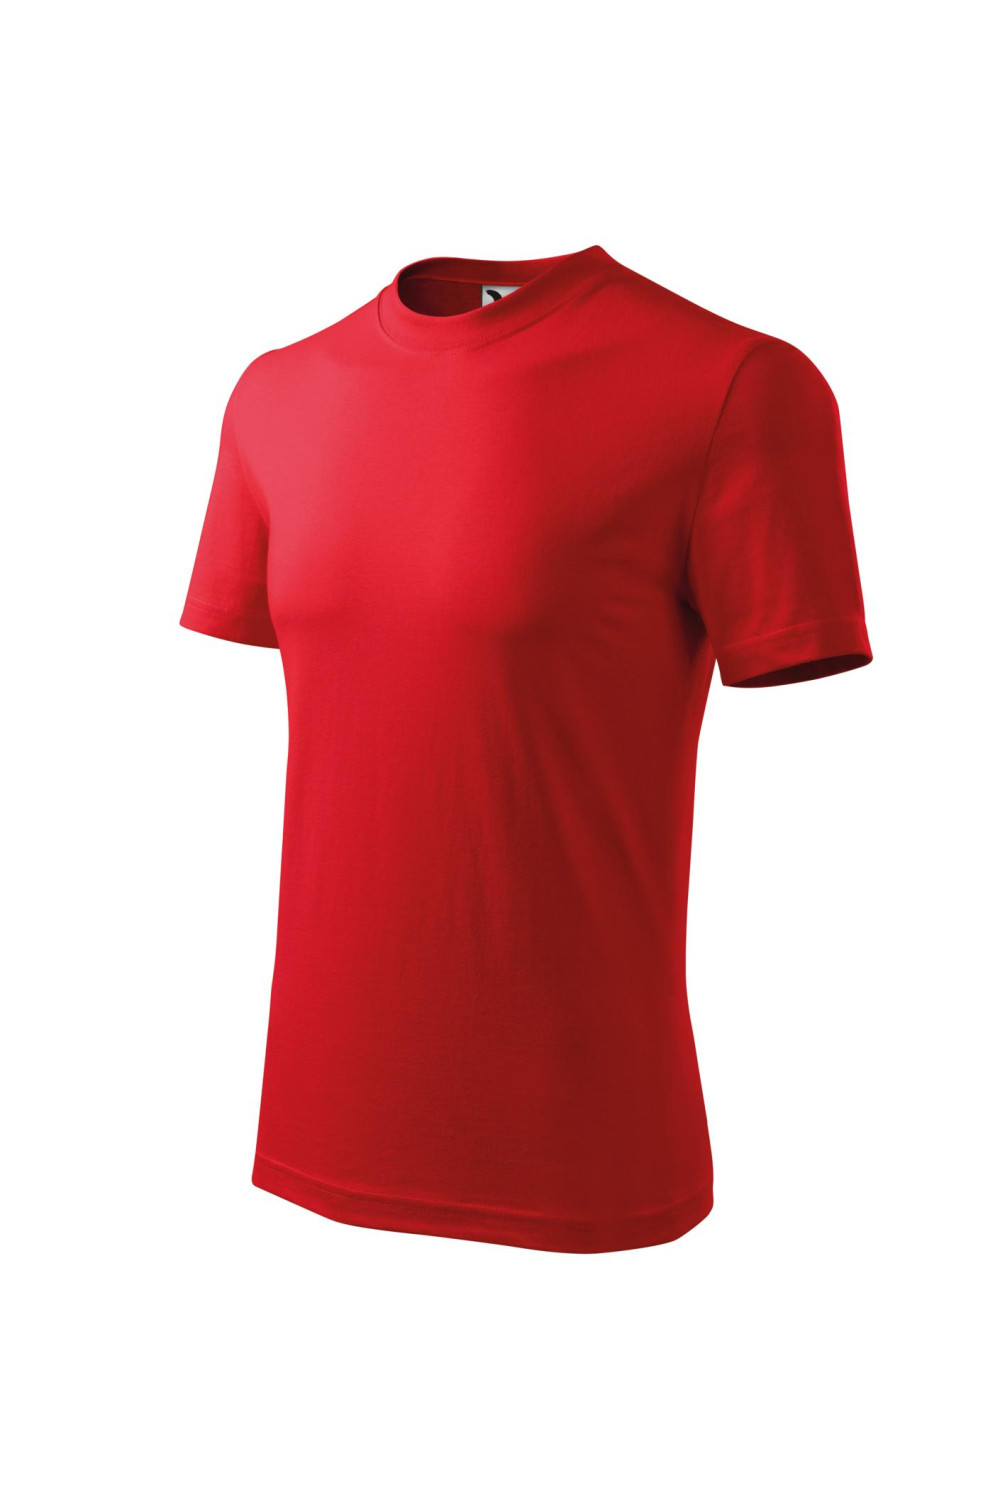 HEAVY 110 MALFINI ADLER Koszulka t-shirt unisex 100% bawełna czerwony